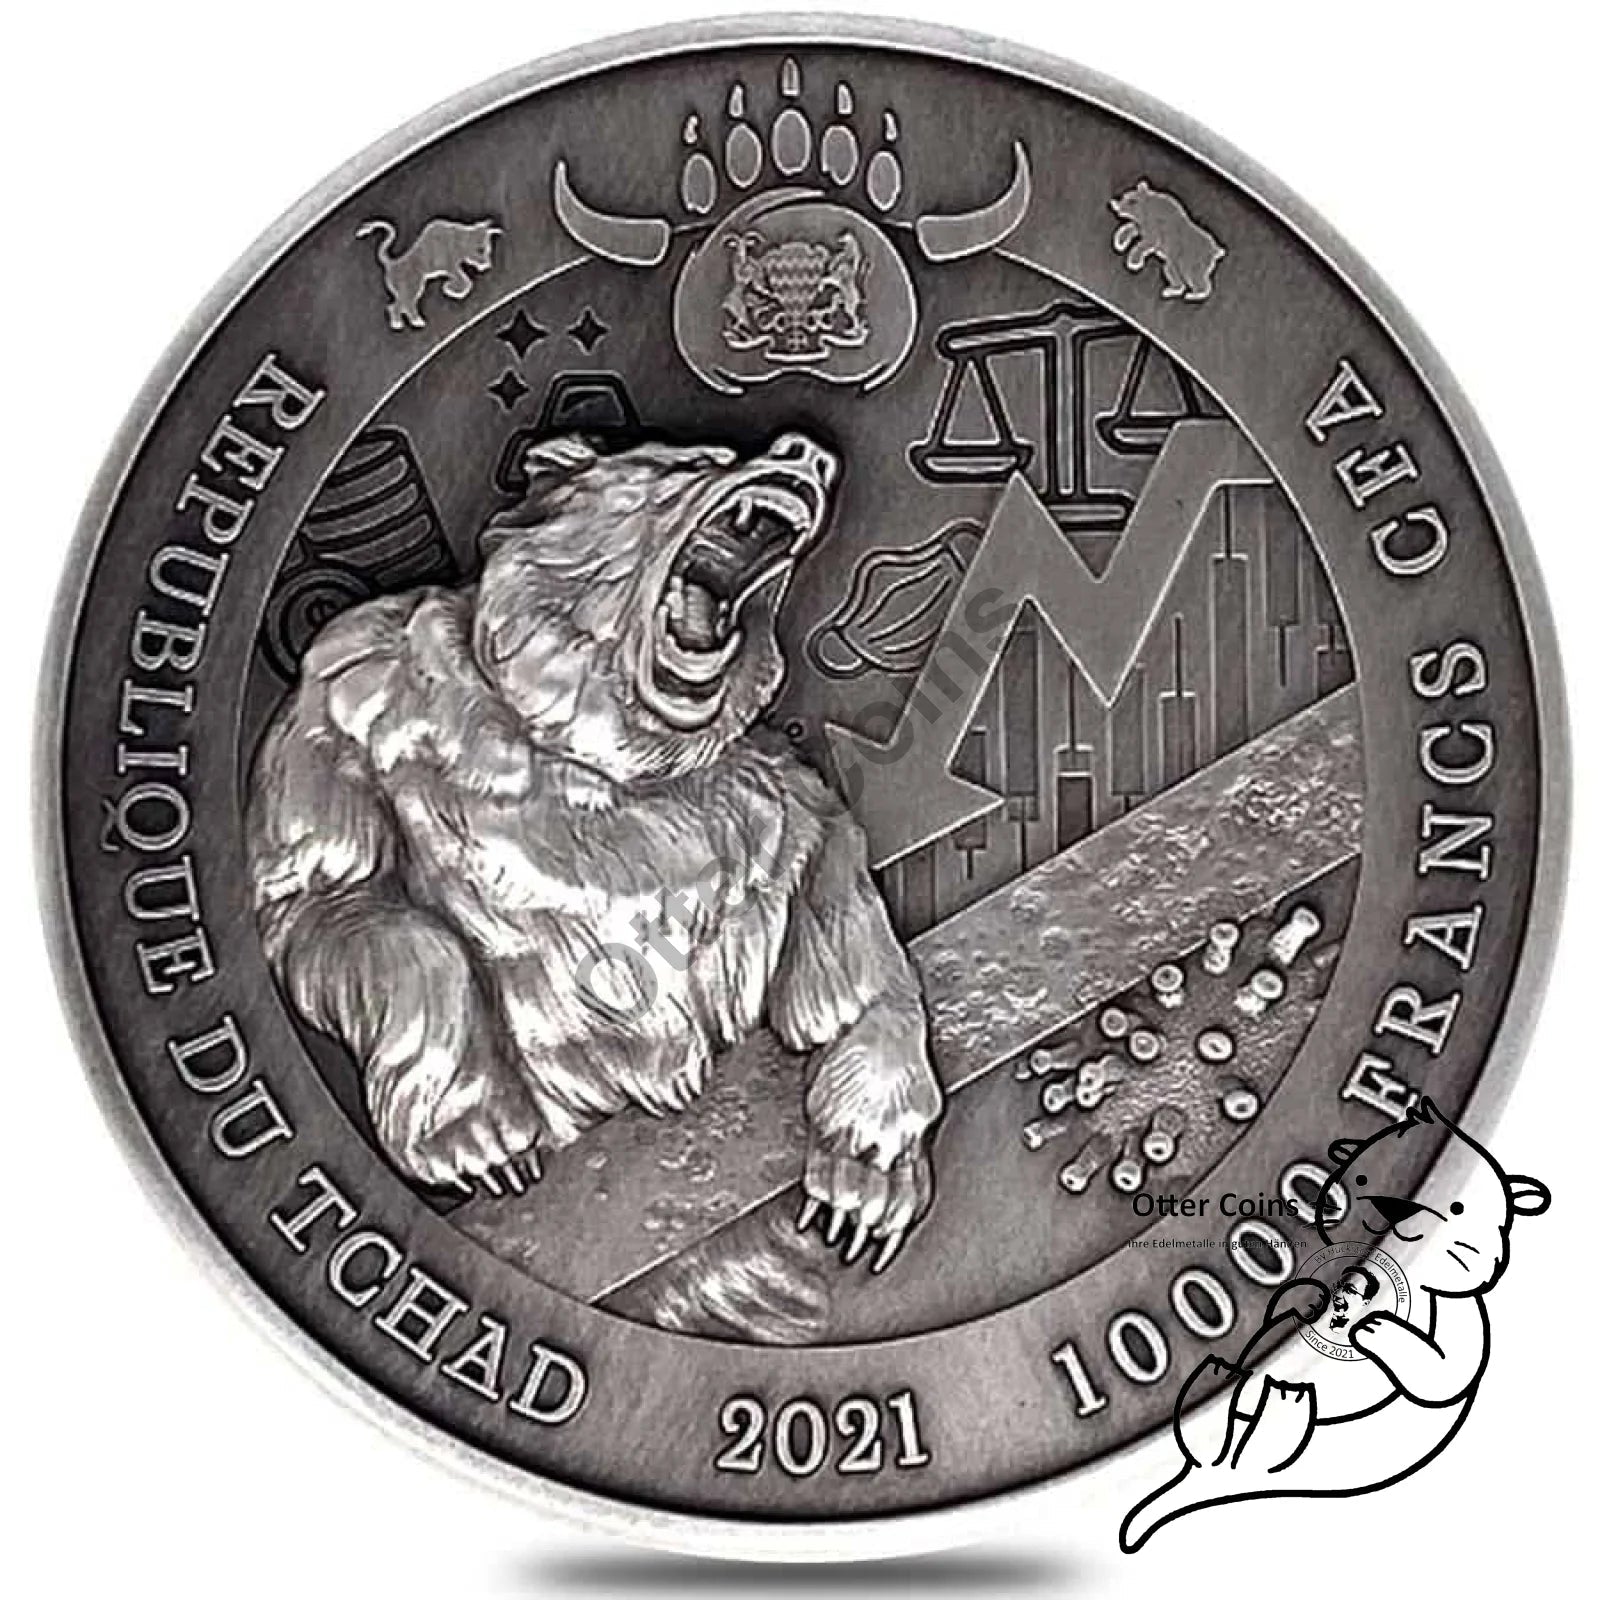 Chad 2 oz Silber Bull vs. Bear Antik High Relief Coin 2021*